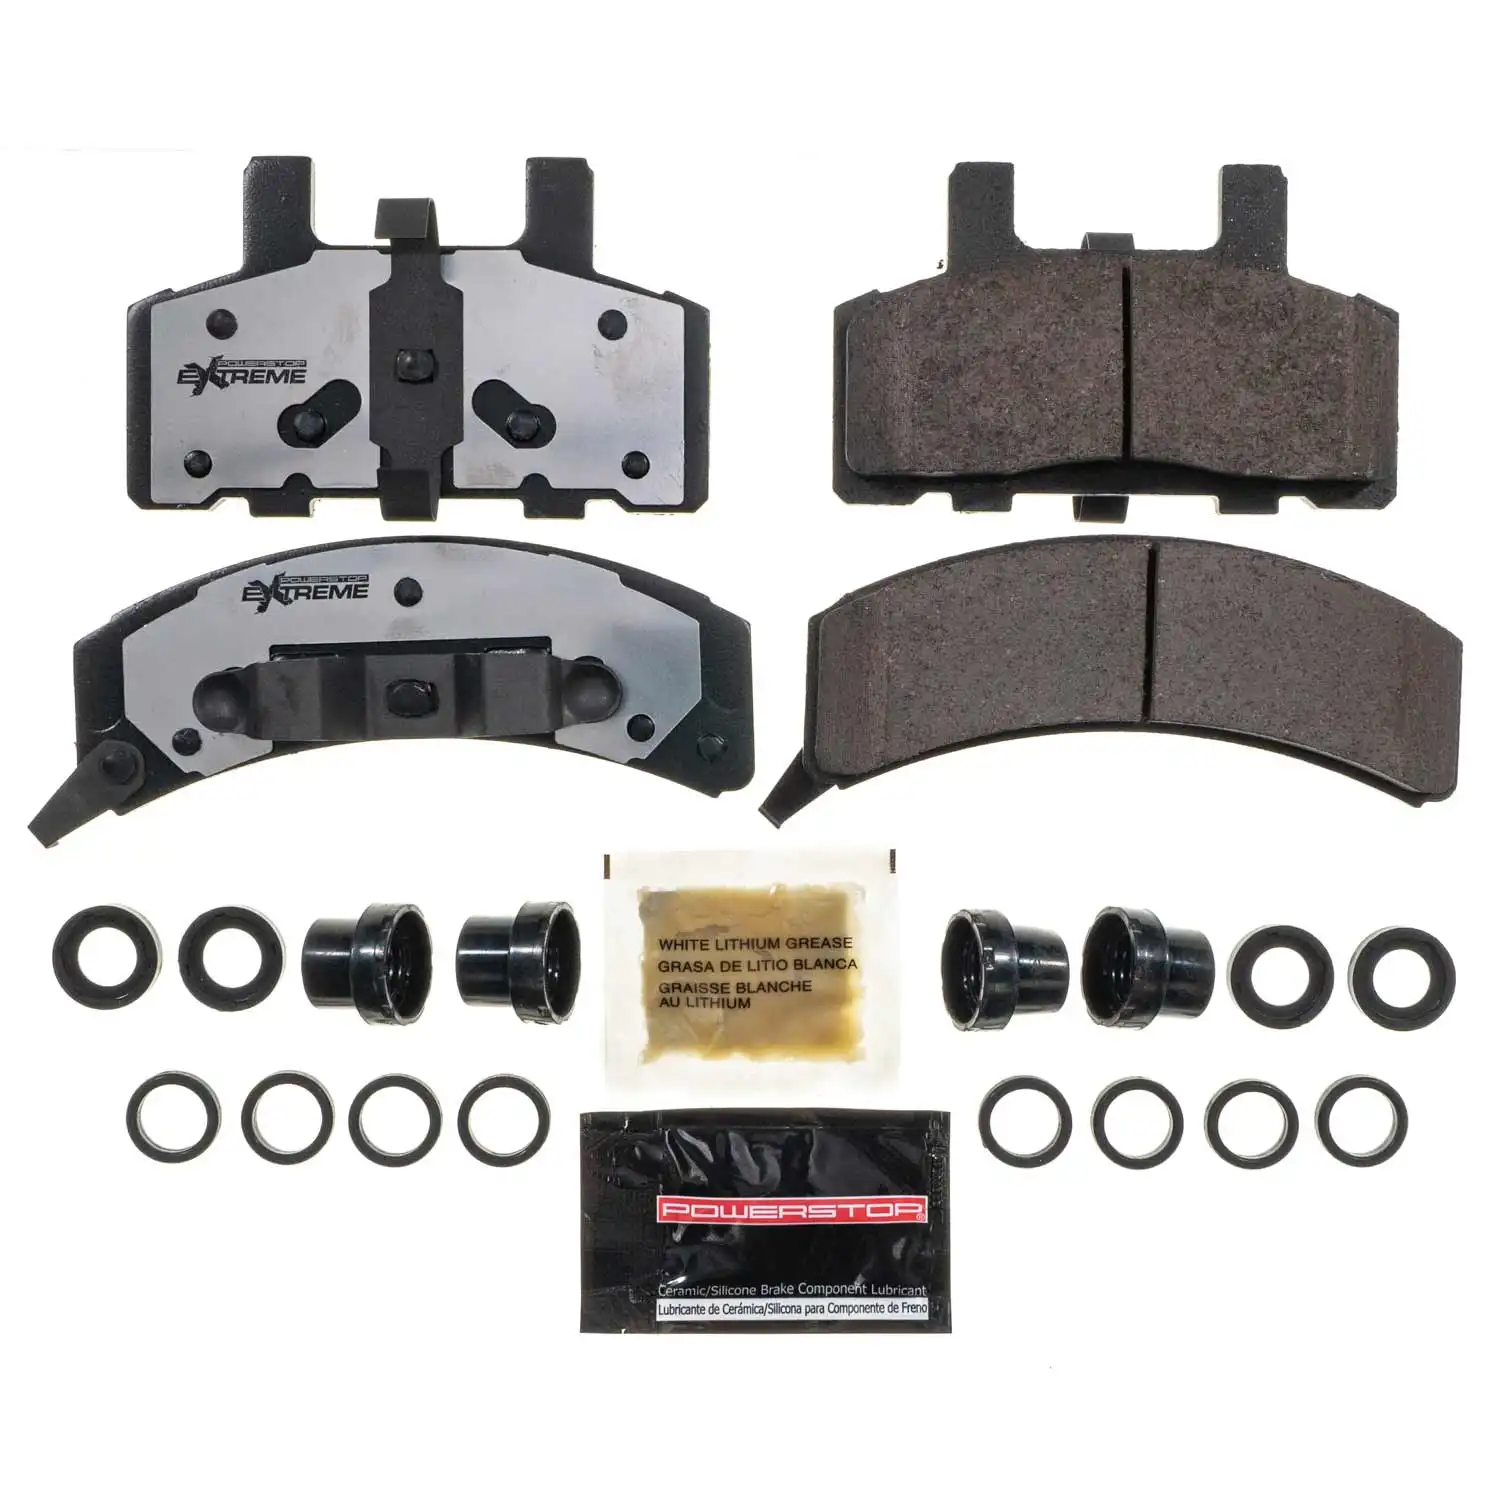 PS Z36 für Carbon-Keramik-Bremsbeläge Amerikanische Auto-Bremsen und Pads für Cadillac mit Großhandels preis pads